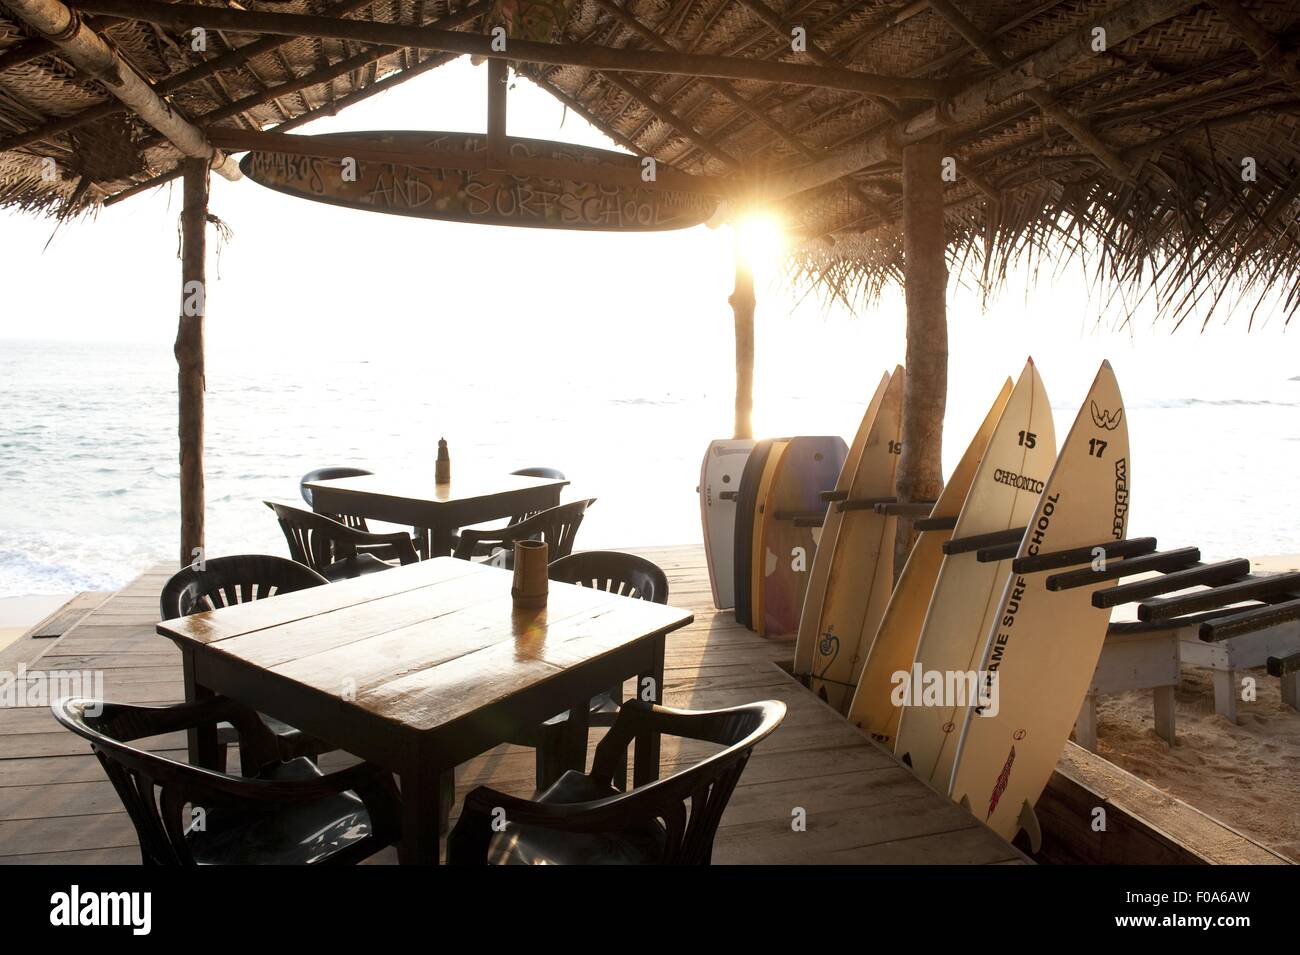 Mambo's Cafe and surfboards on Hikkaduwa beach, Sri Lanka Stock Photo